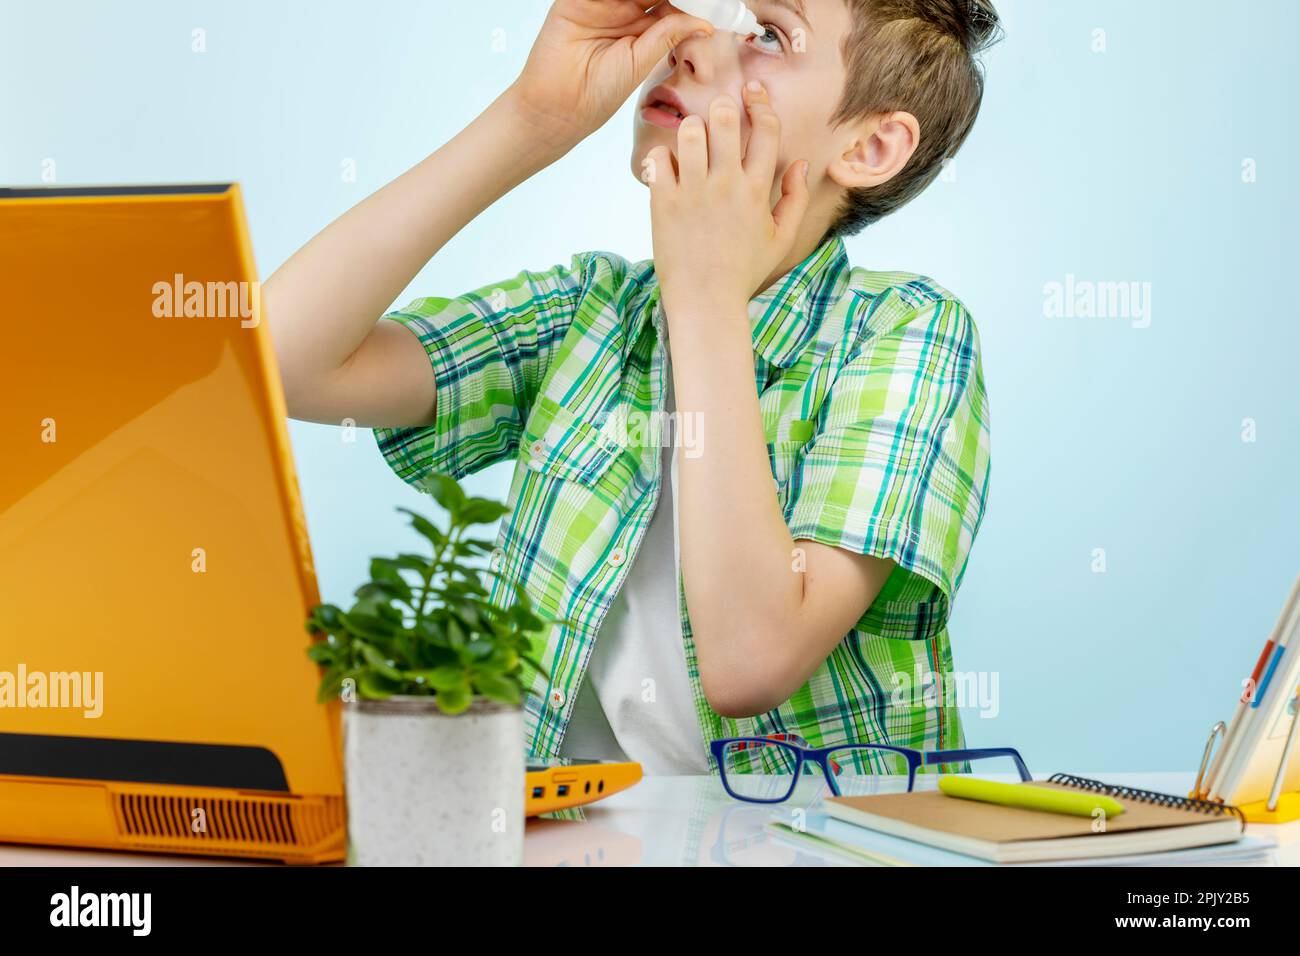 Un garçon fatigué ressent de la douleur lorsqu'il exerce ses yeux de manière excessive sur l'ordinateur, fait tomber les yeux irrités par des gouttes. Le concept de mauvaise vue chez un enfant Banque D'Images